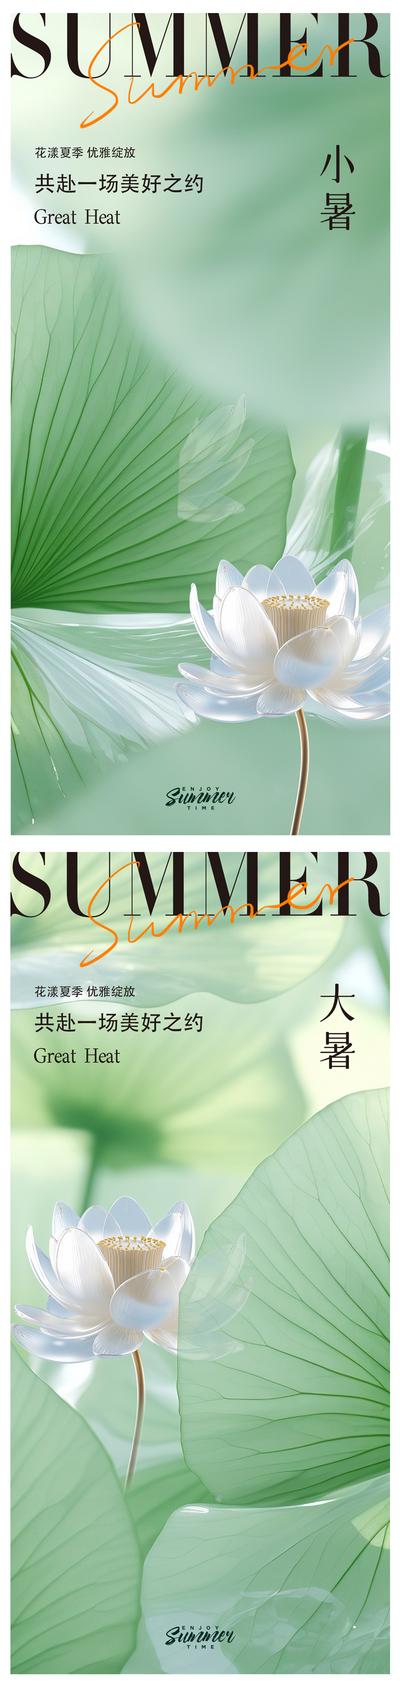 南门网 海报 地产 二十四节气 大暑 小暑 荷花 琉璃 蜻蜓 蝉鸣